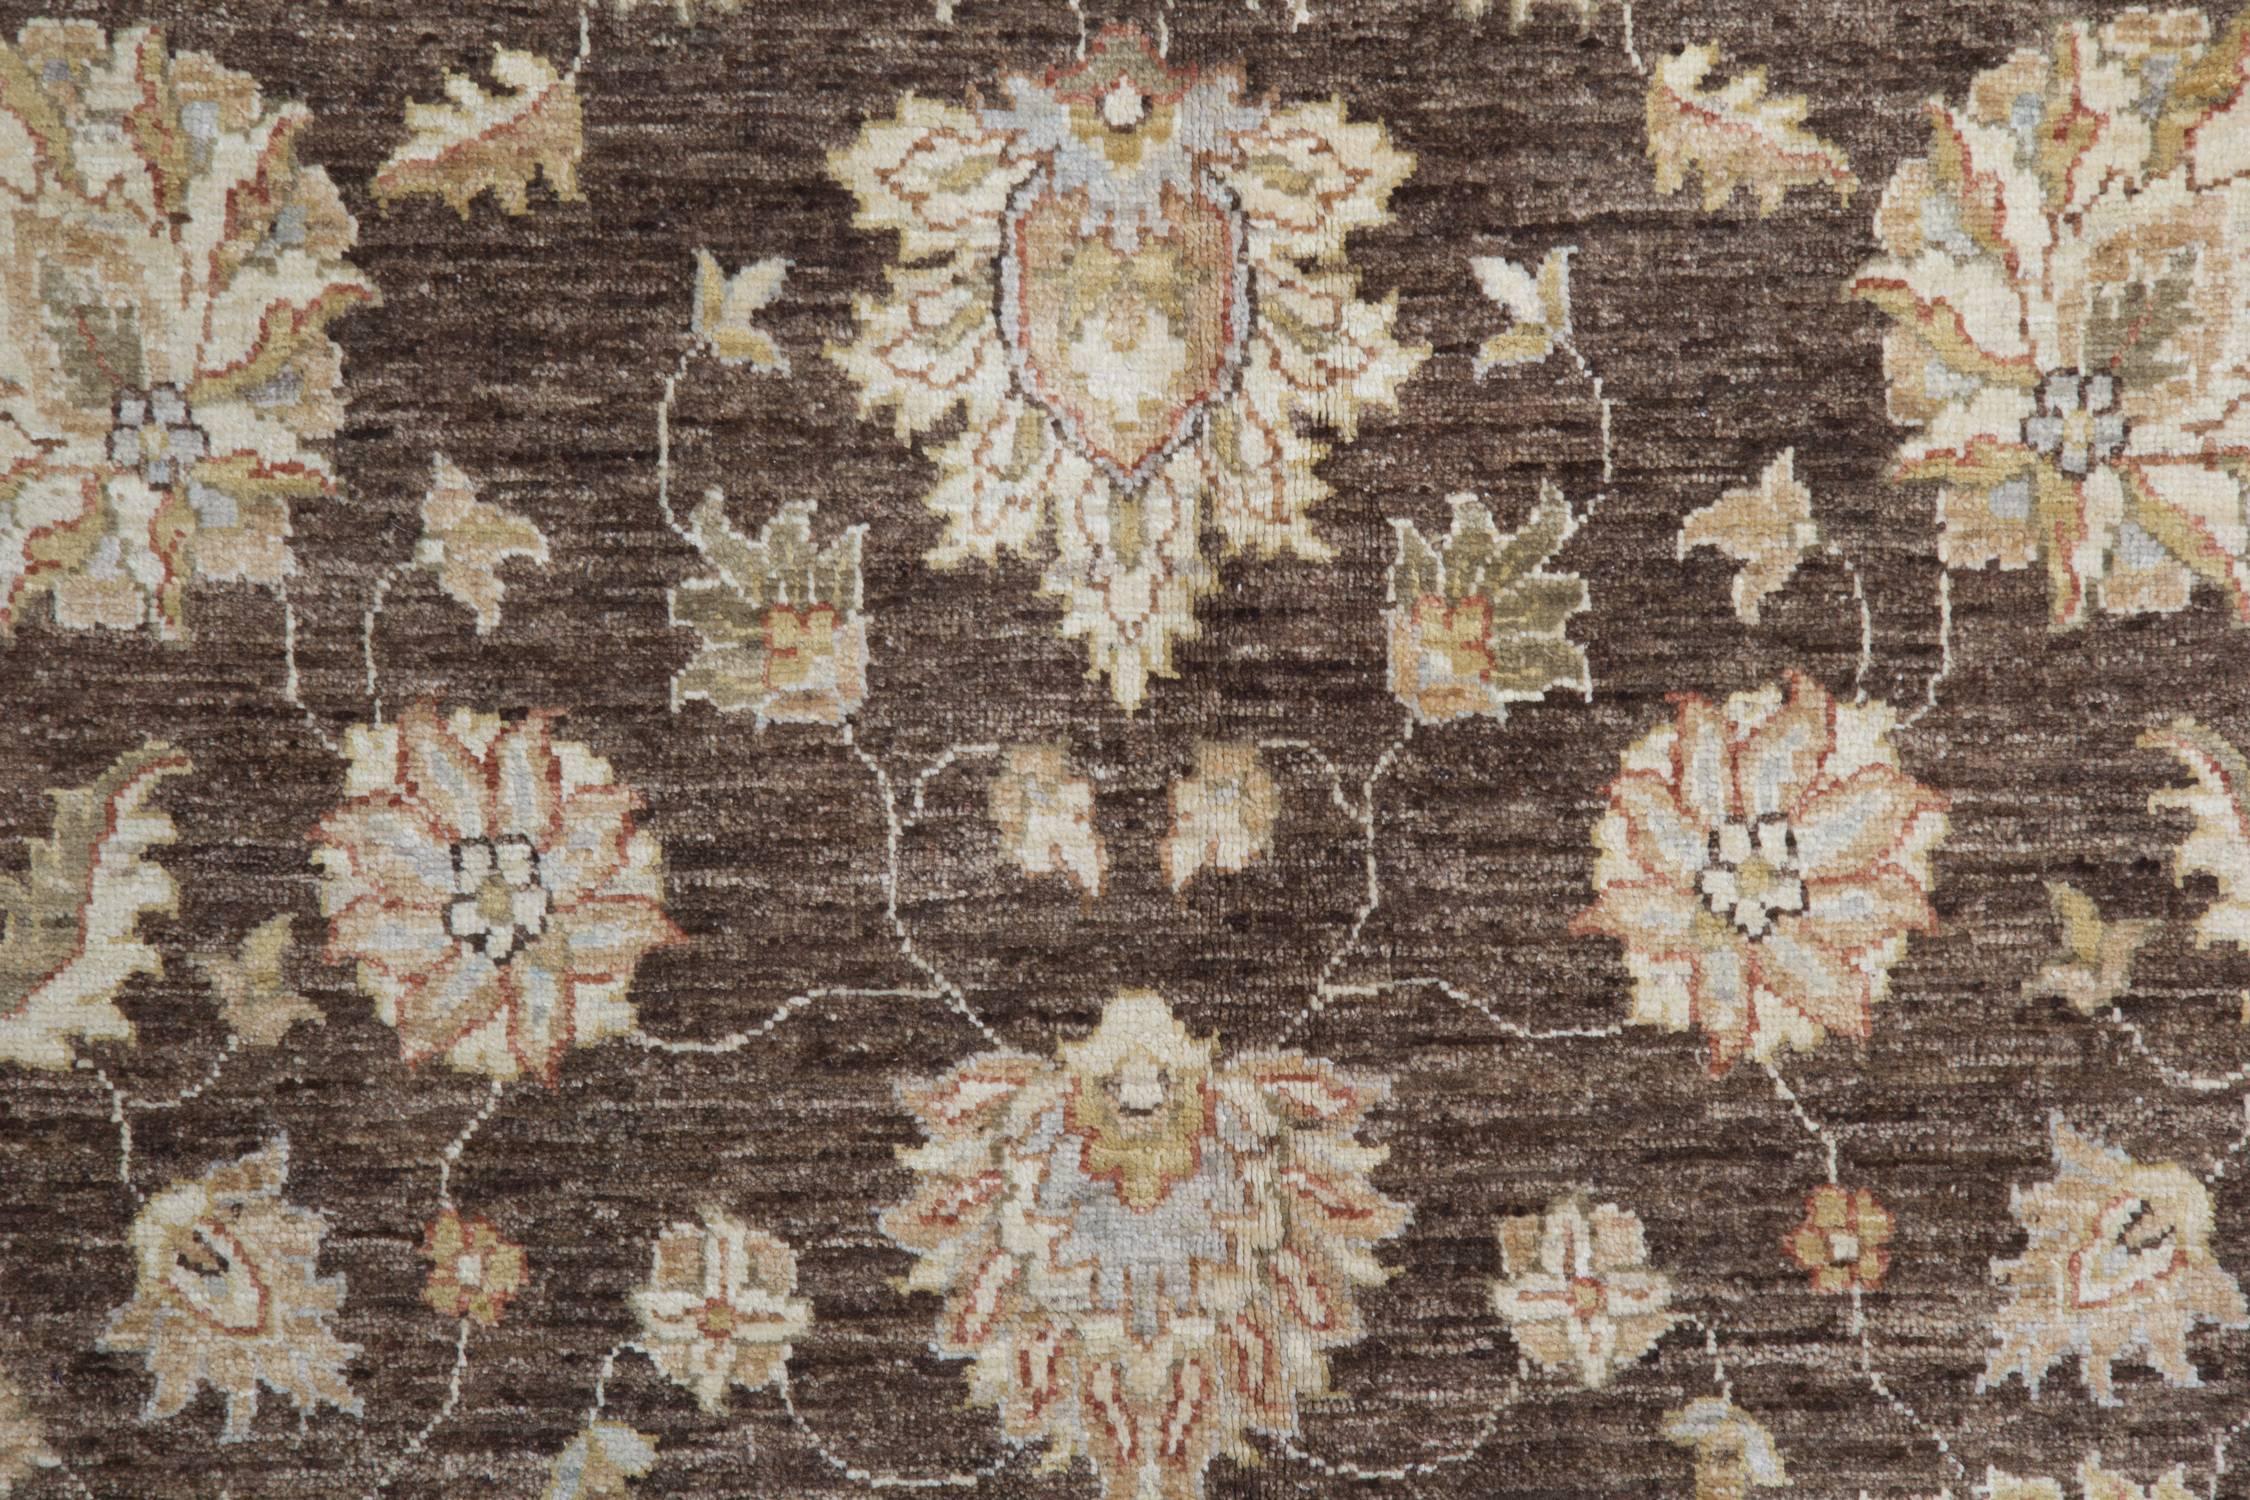 Afghan Oriental Rug Hand Made Carpet Floral Design Living Room for Sale For Sale